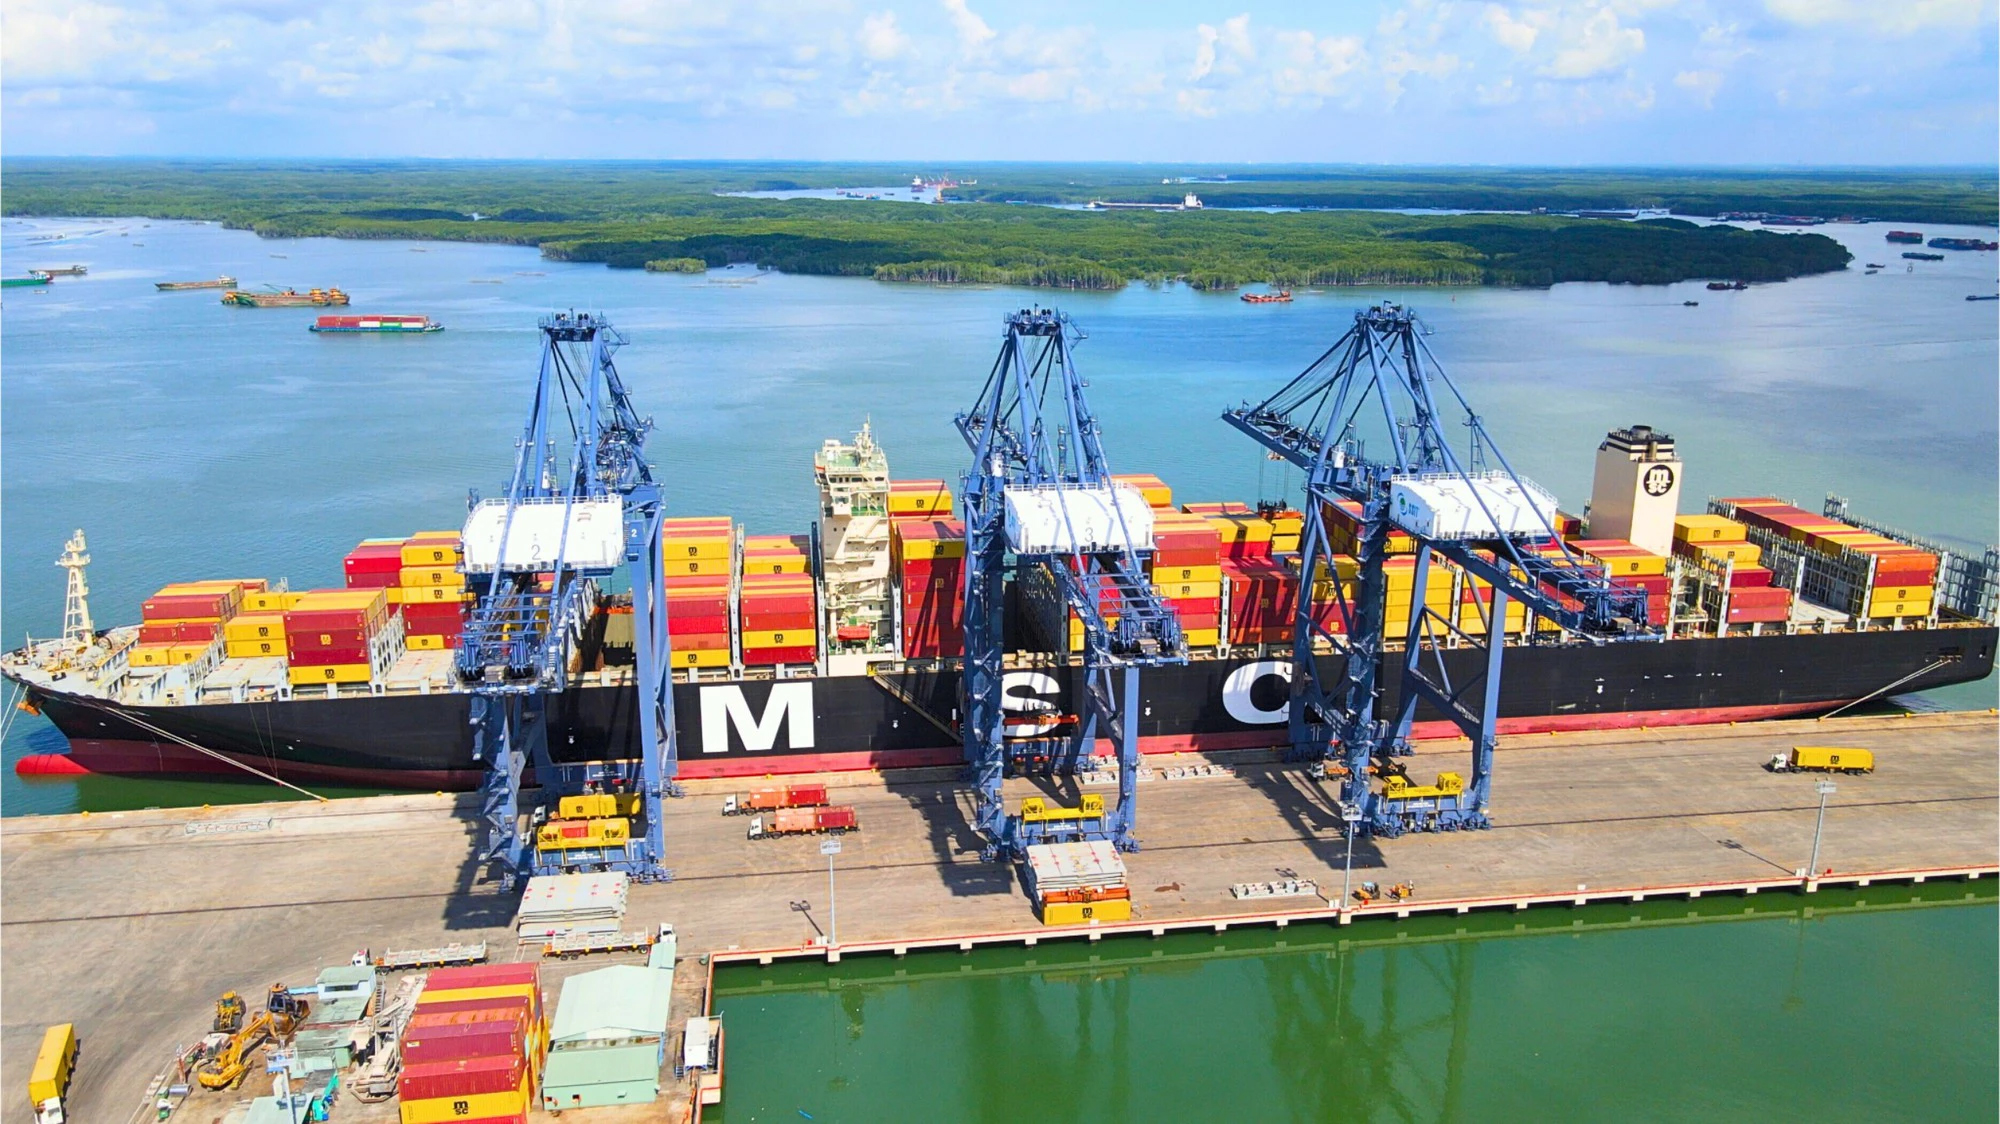 Tàu MSC ALEXANDRA có trọng tải toàn phần là 165,908 tấn, chiều dài 365,50m đã cập cảng SSIT để xếp dỡ gần 12.000 TEU hàng hóa